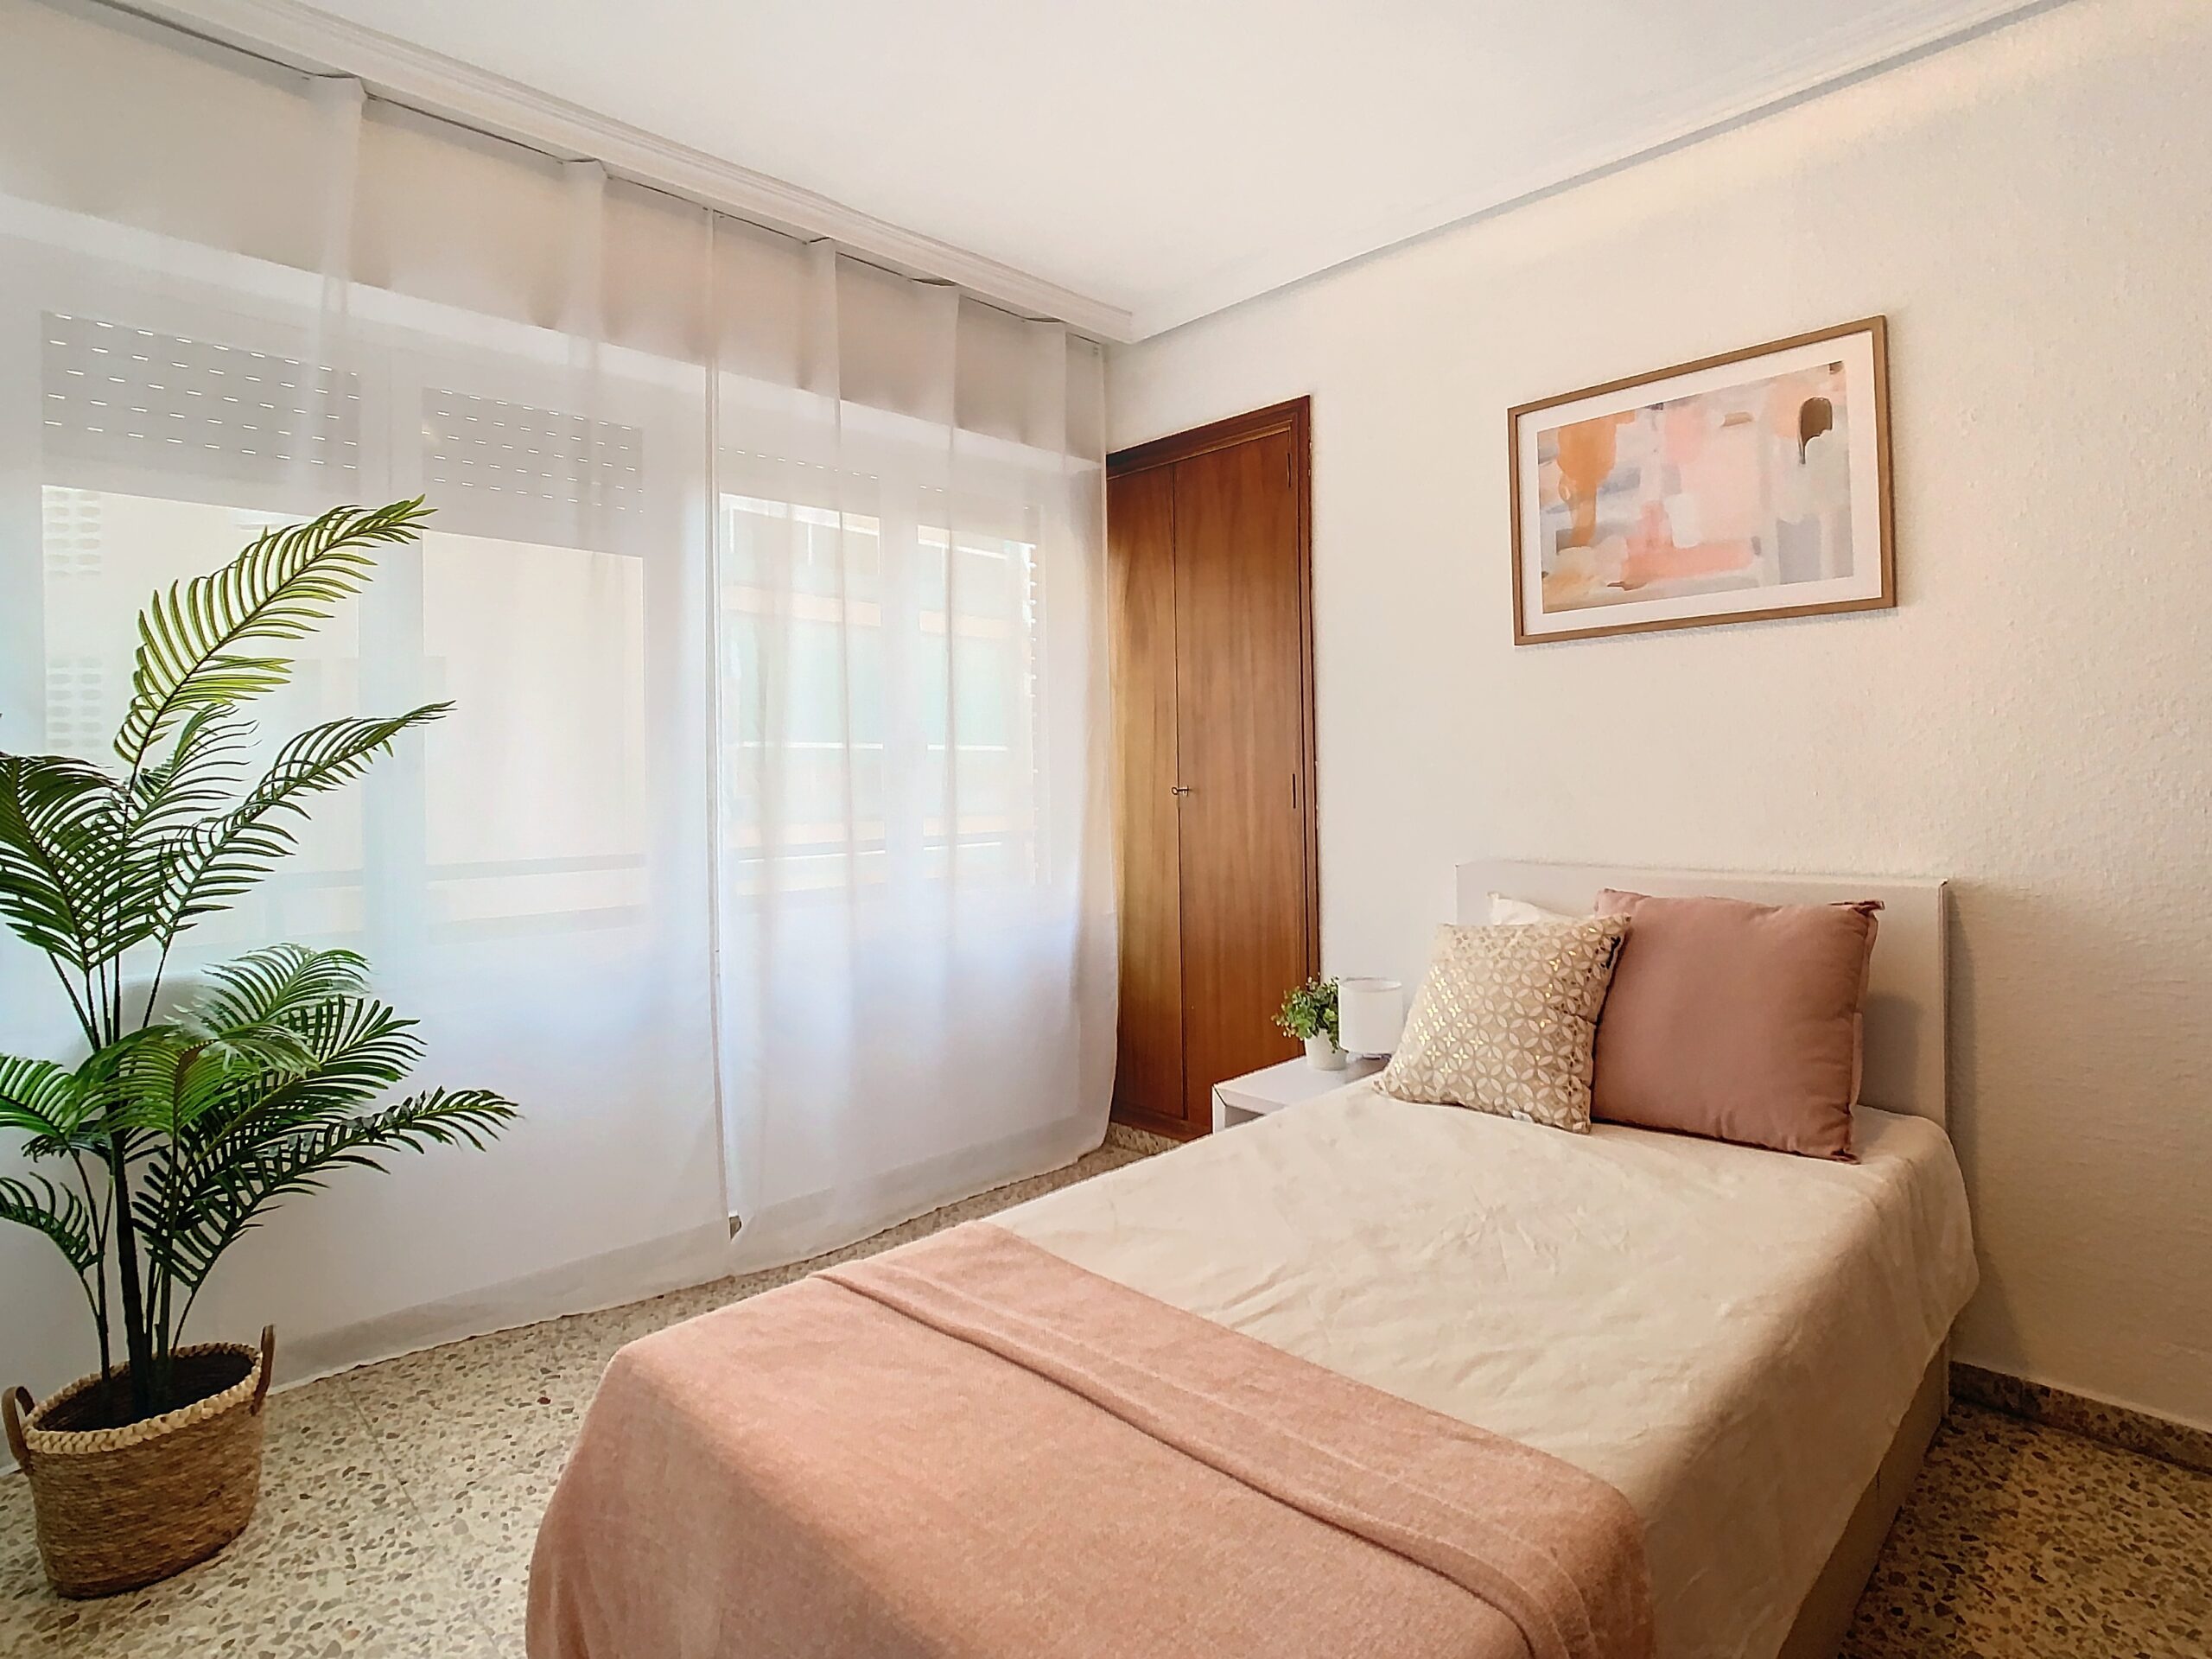 Home Staging Casamayor en habitación de vivienda Alicante